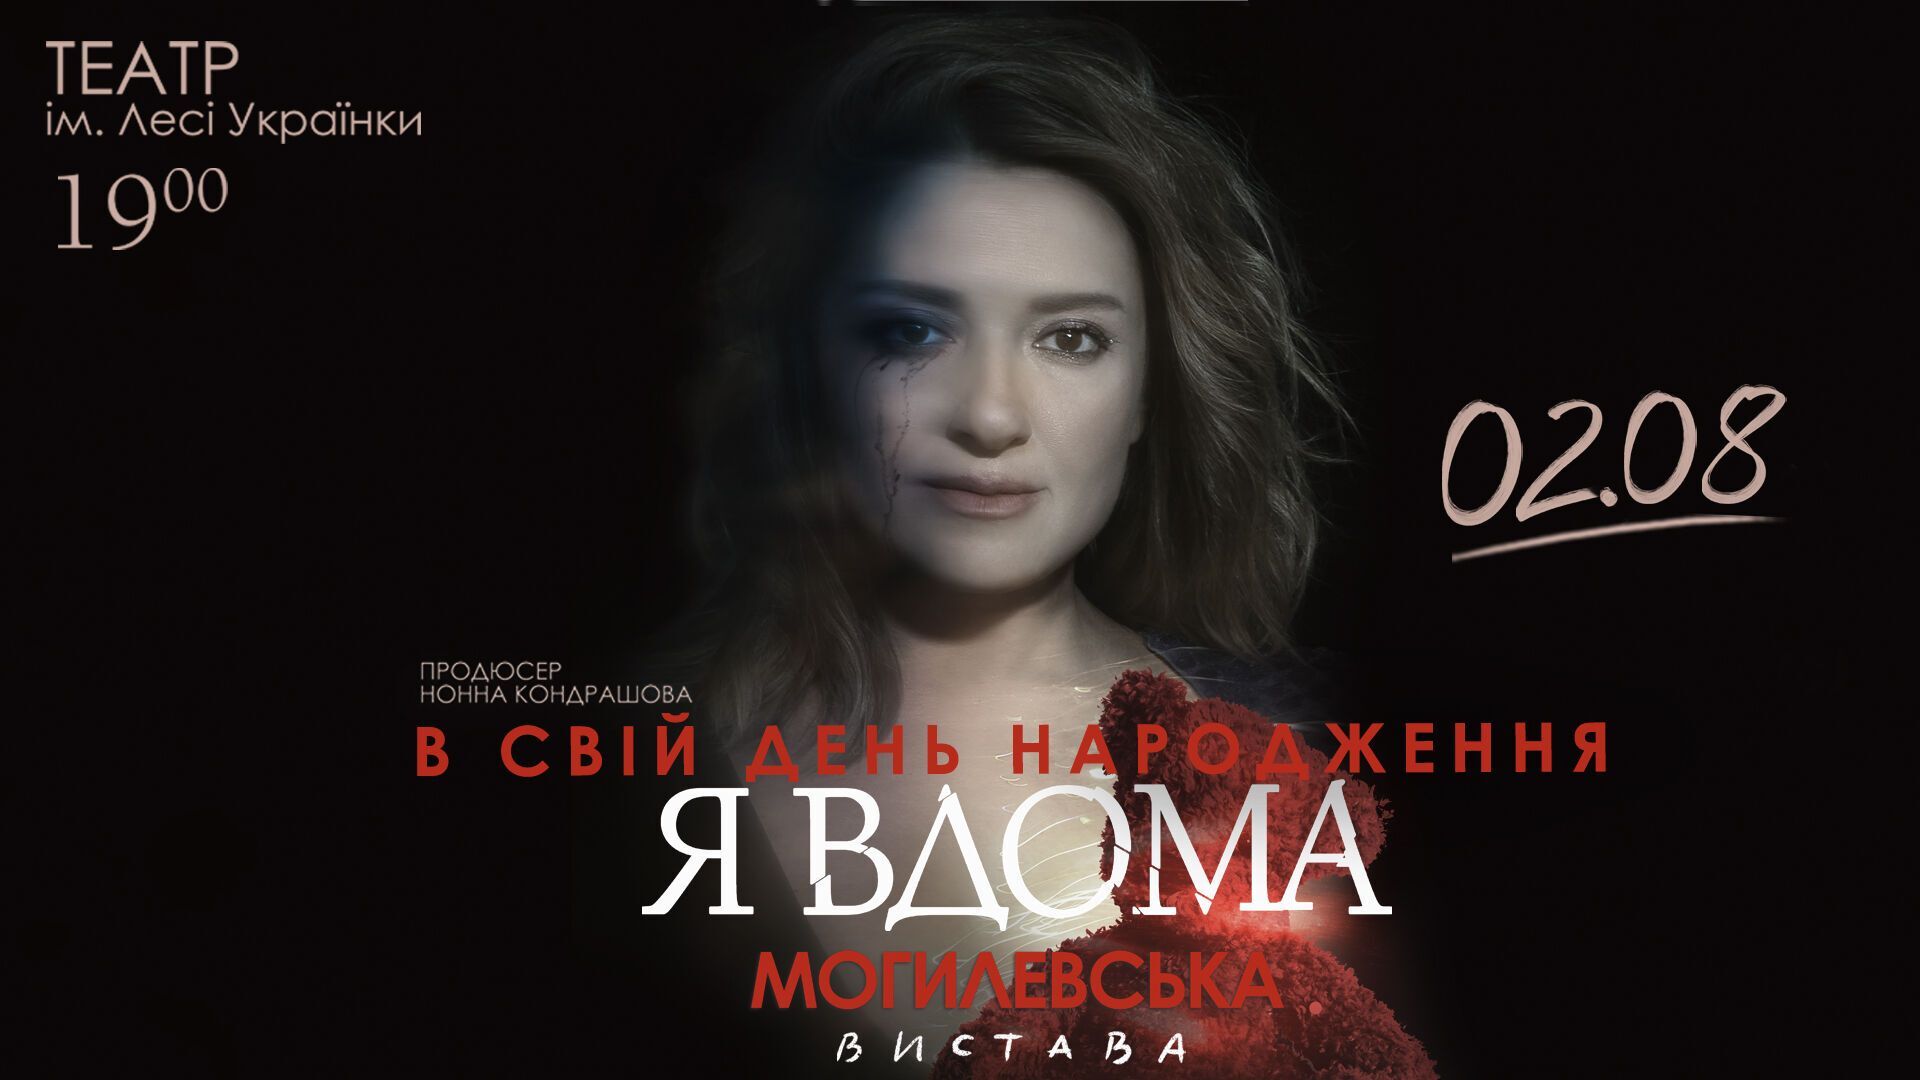 Наталя Могилевська 2 серпня зіграє в виставі